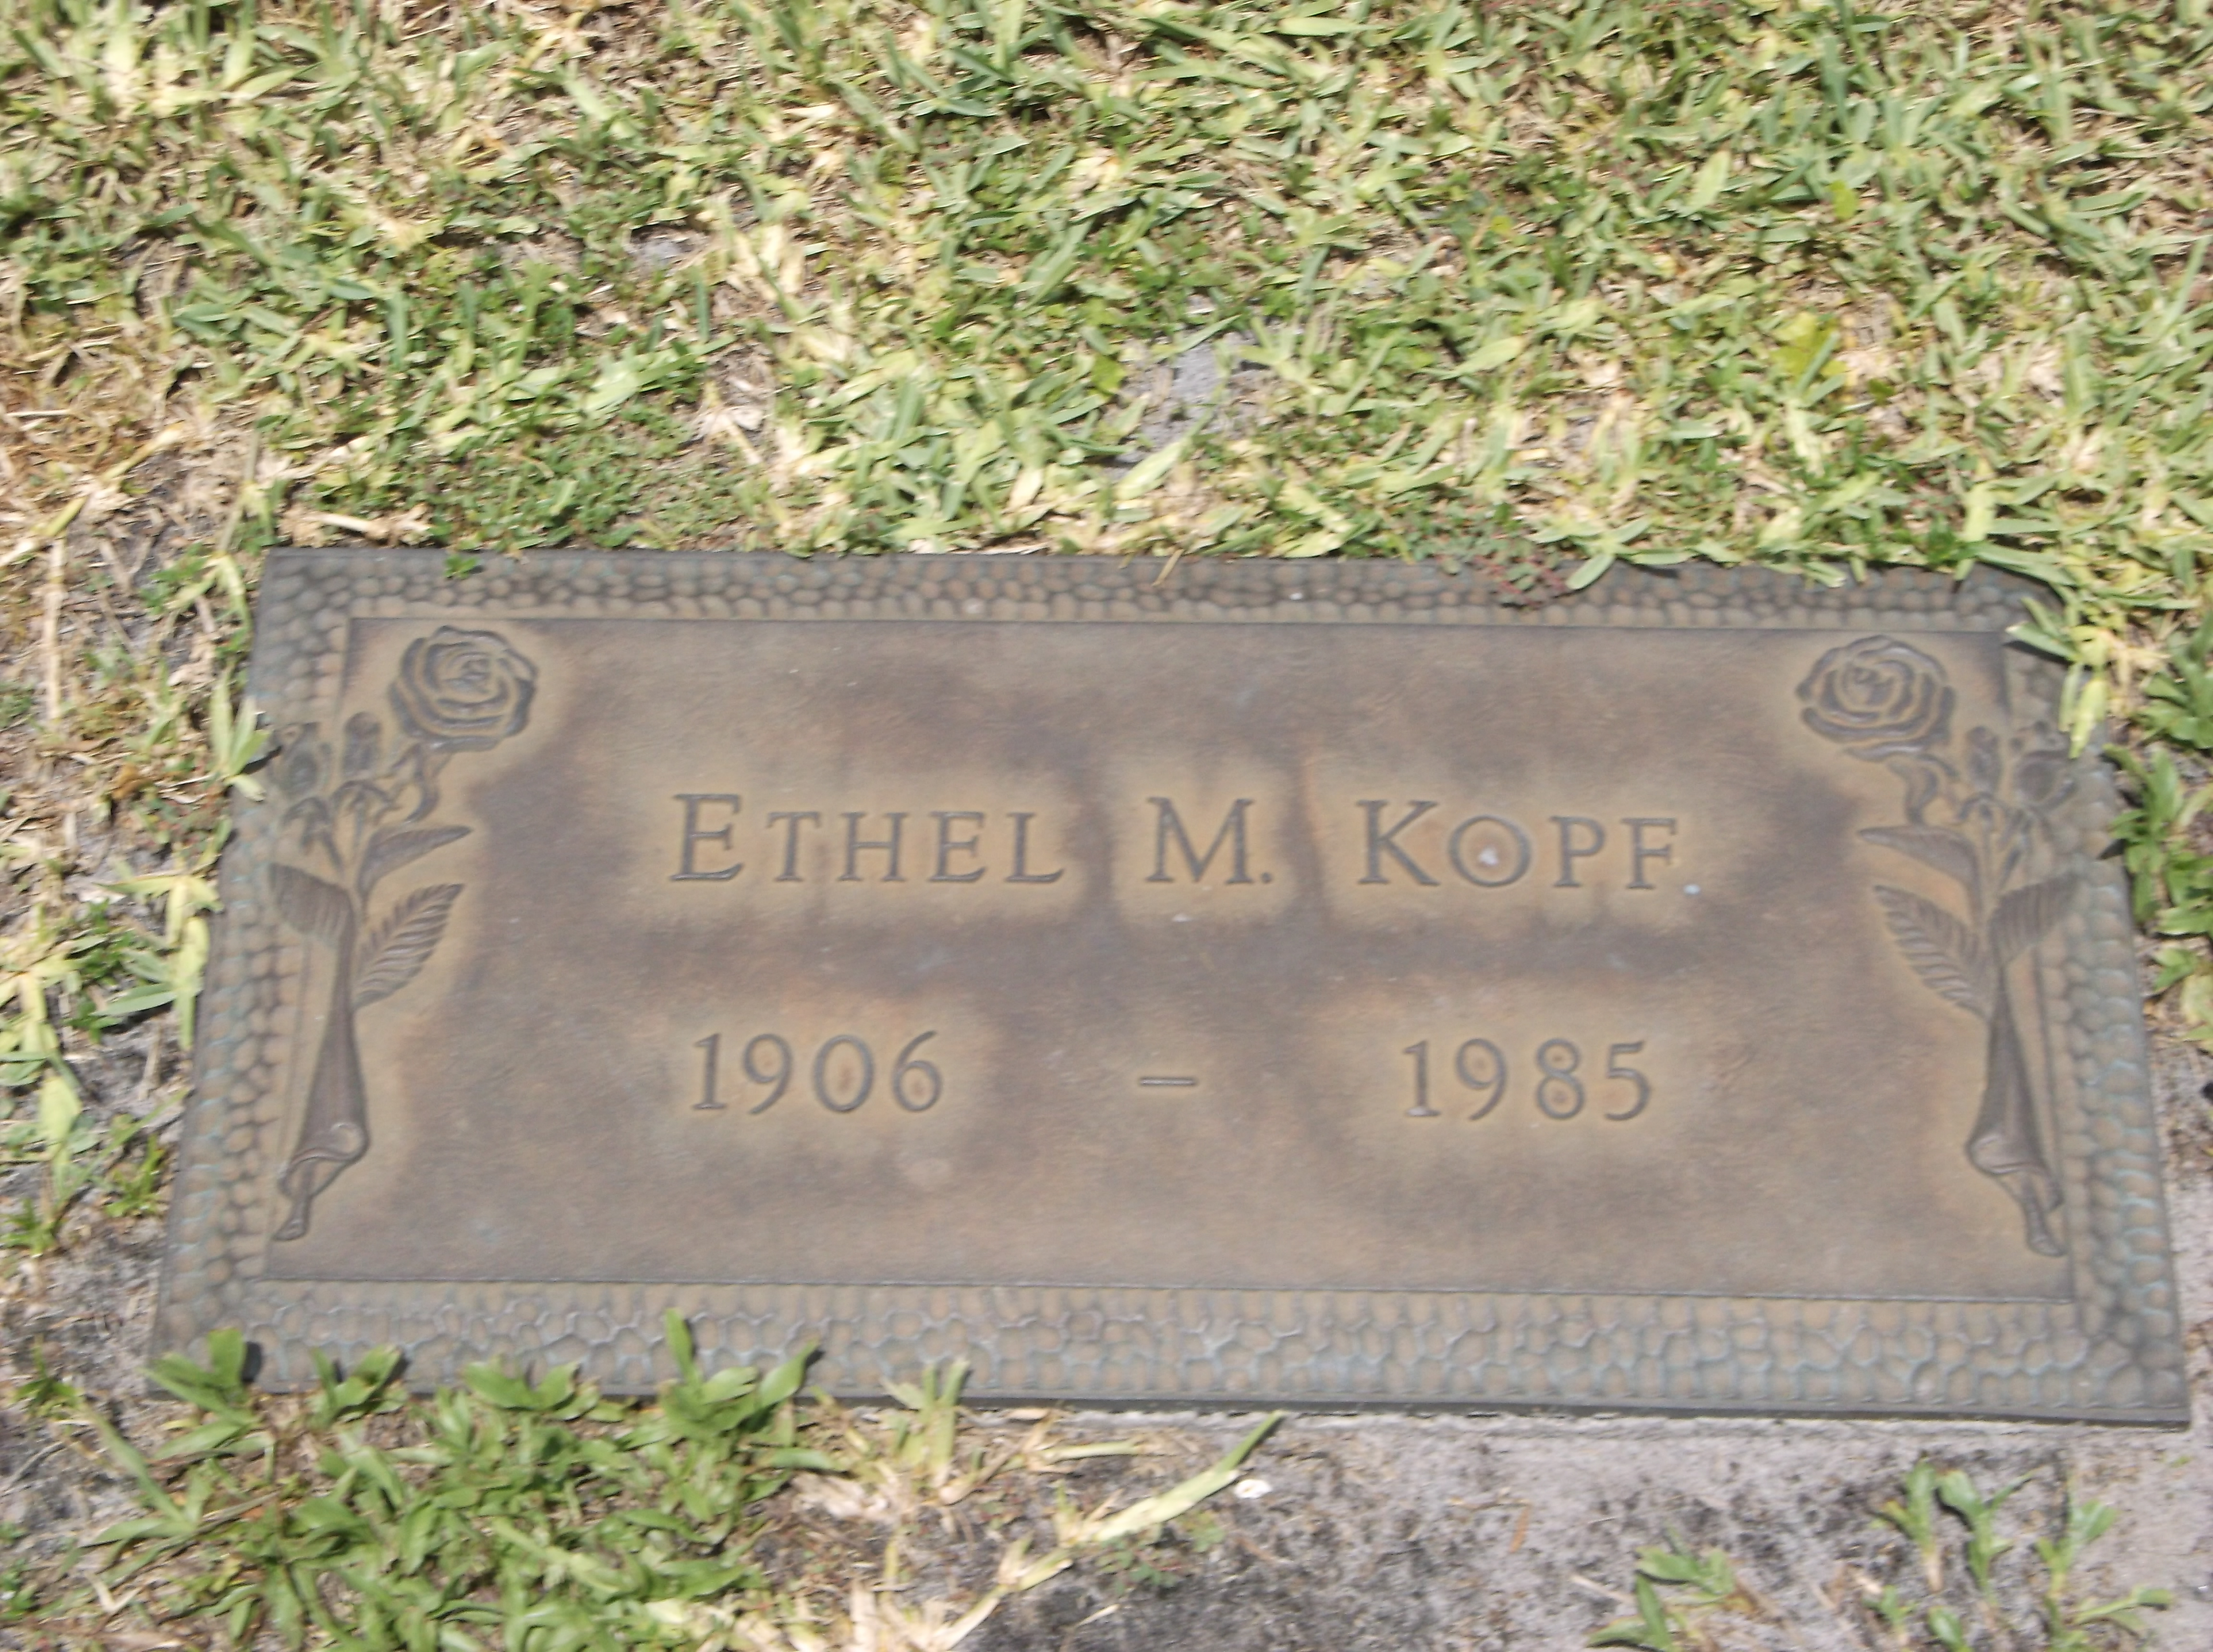 Ethel M Kopf